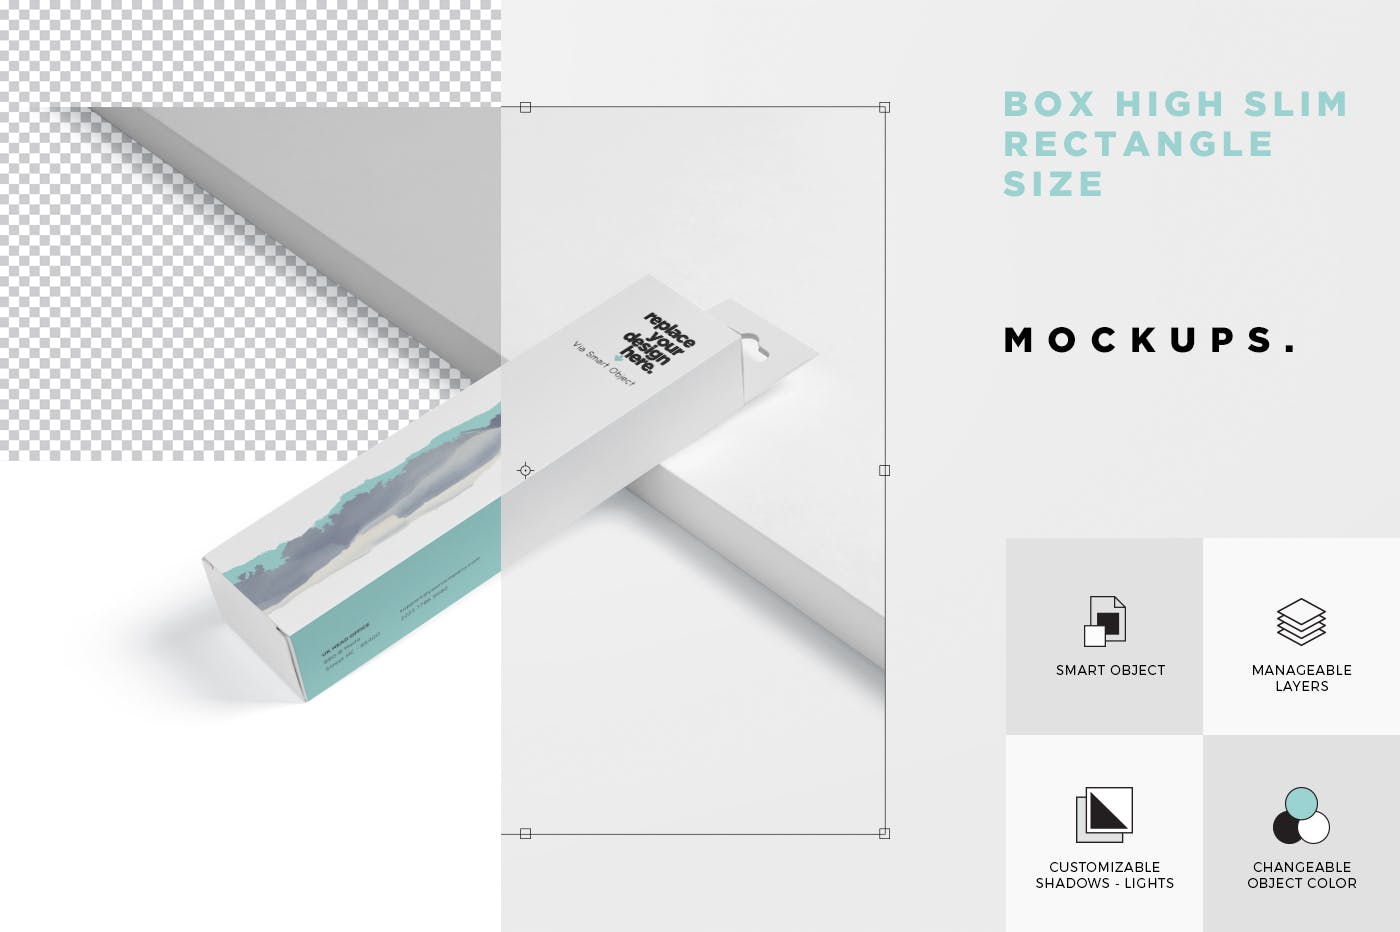 超薄矩形长条包装盒外观设计效果图16设计网精选 Box Mockup PSDs – High Slim Rectangle Size Hanger插图(6)